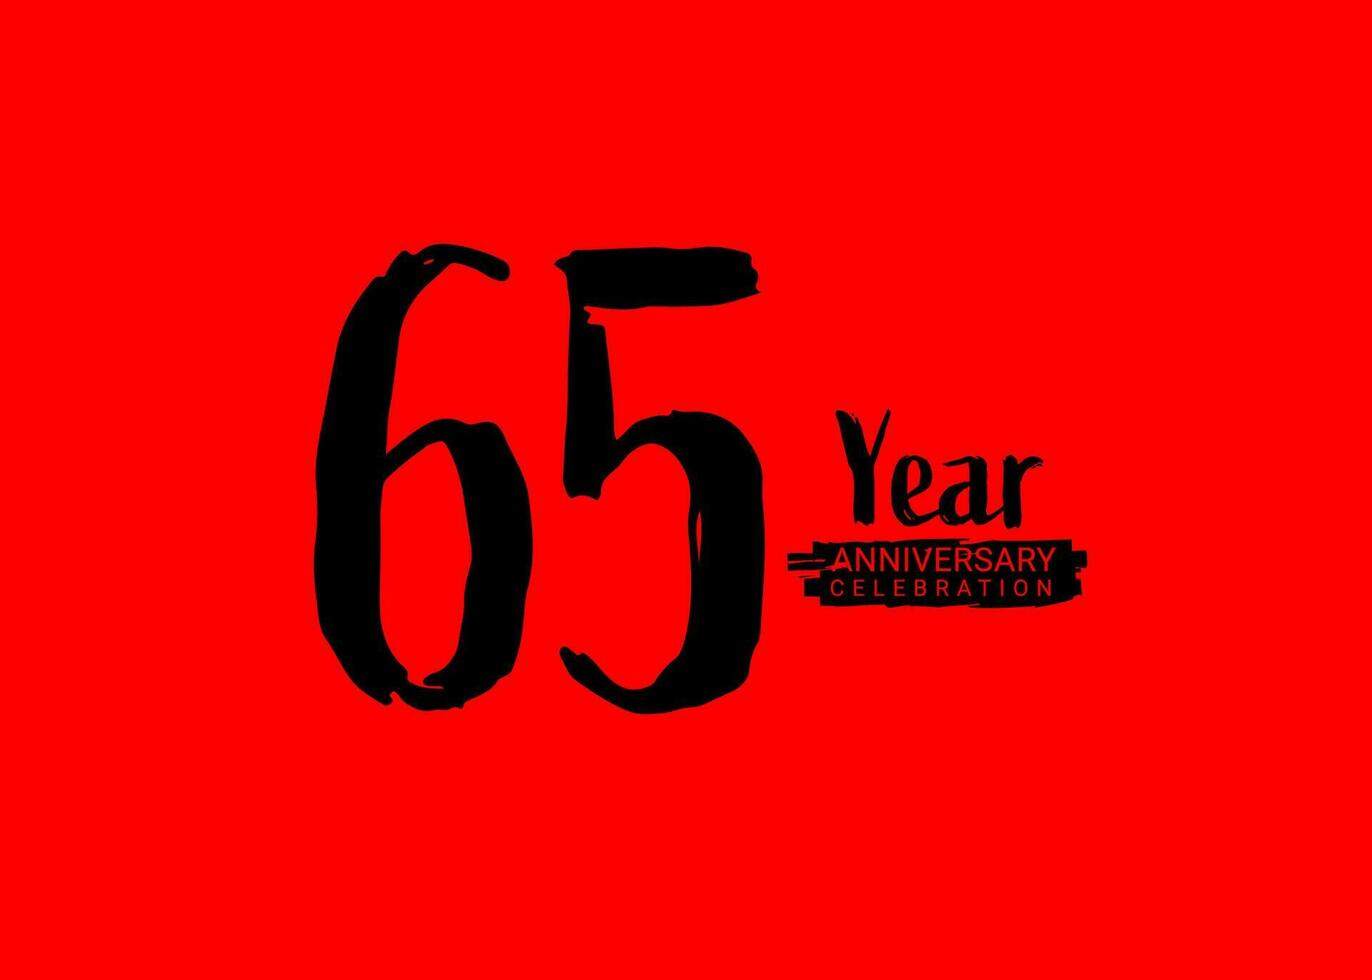 65 år årsdag firande logotyp på röd bakgrund, 65 siffra logotyp design, 65:e födelsedag logotyp, logotyp årsdag, vektor årsdag för firande, affisch, inbjudan kort